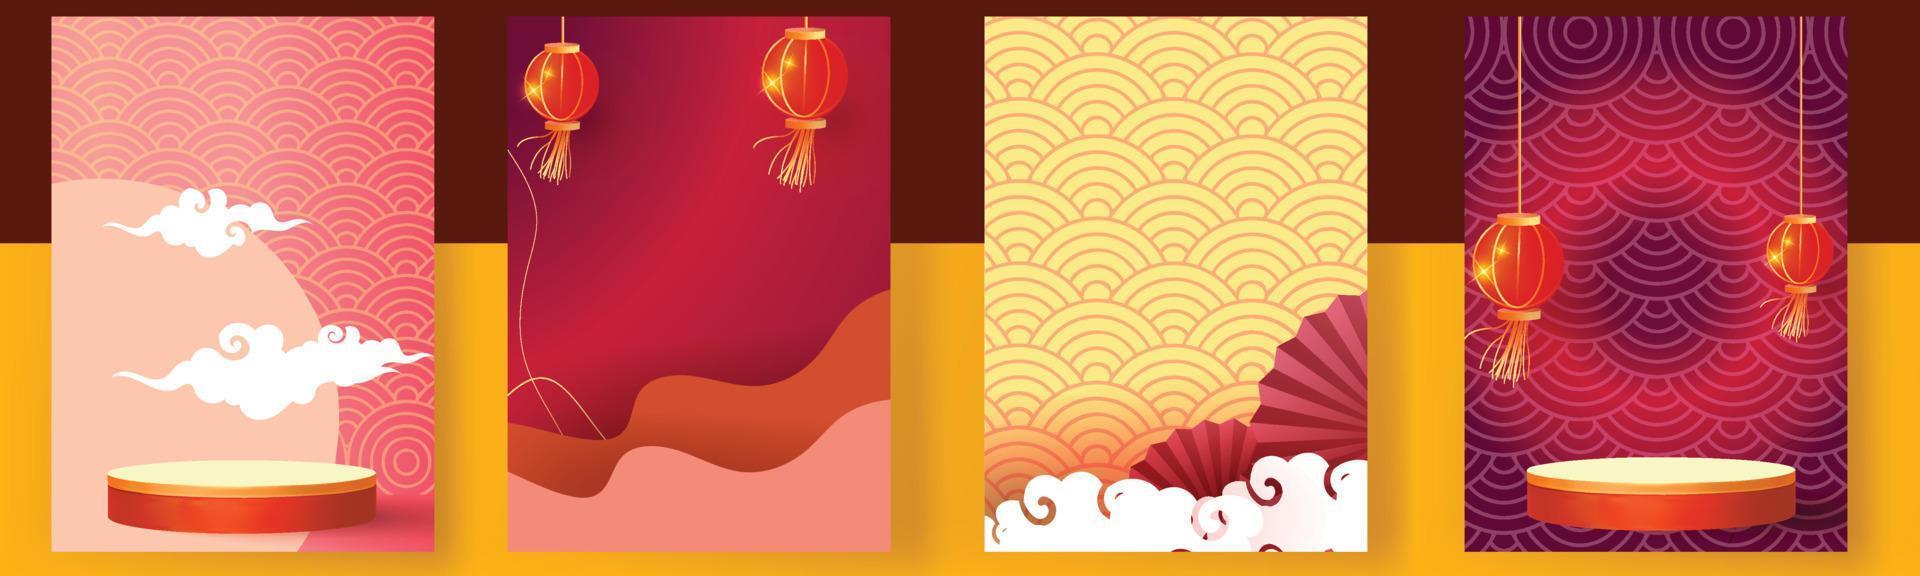 año nuevo chino establecer fondos oro rojo vector podio diseño gráfico modelo moderno plantilla tarjeta